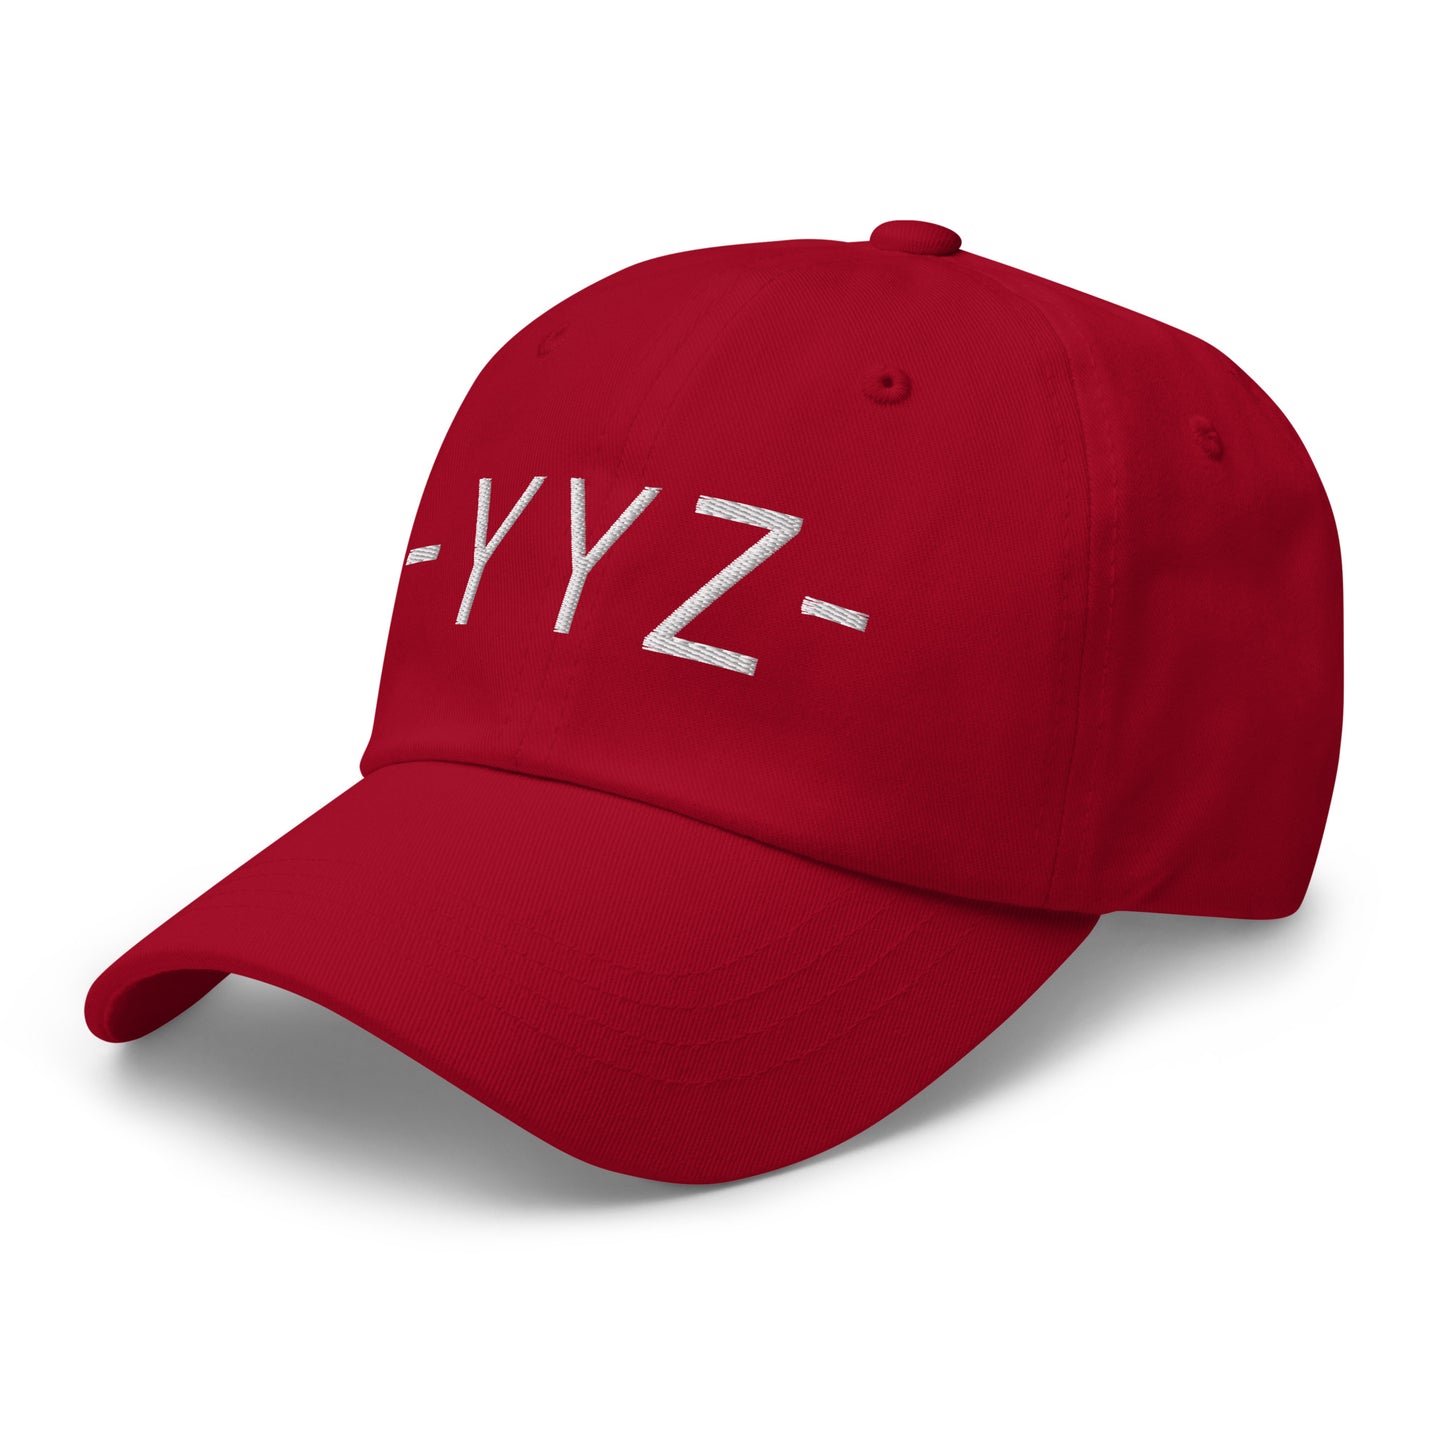 Souvenir Baseball Cap - White • YYZ Toronto • YHM Designs - Image 01